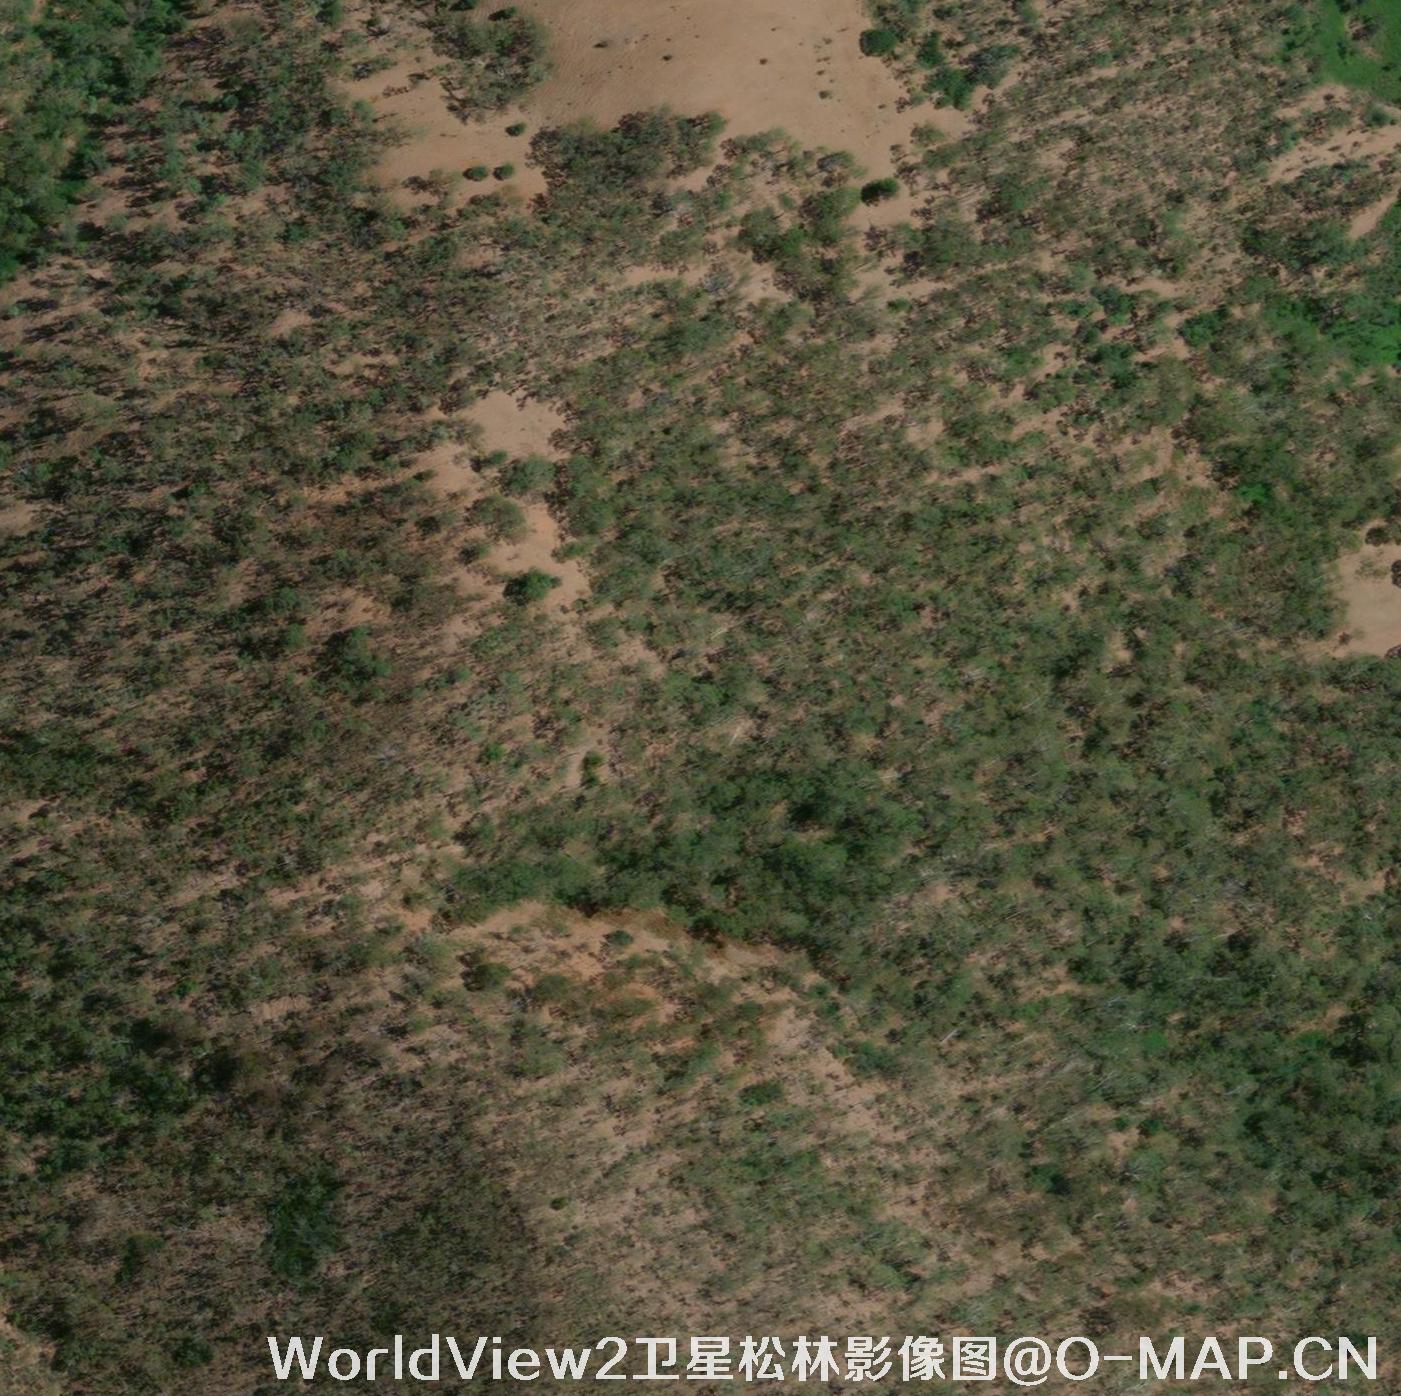 WorldView2卫星拍摄的0.5米分辨率卫星图片